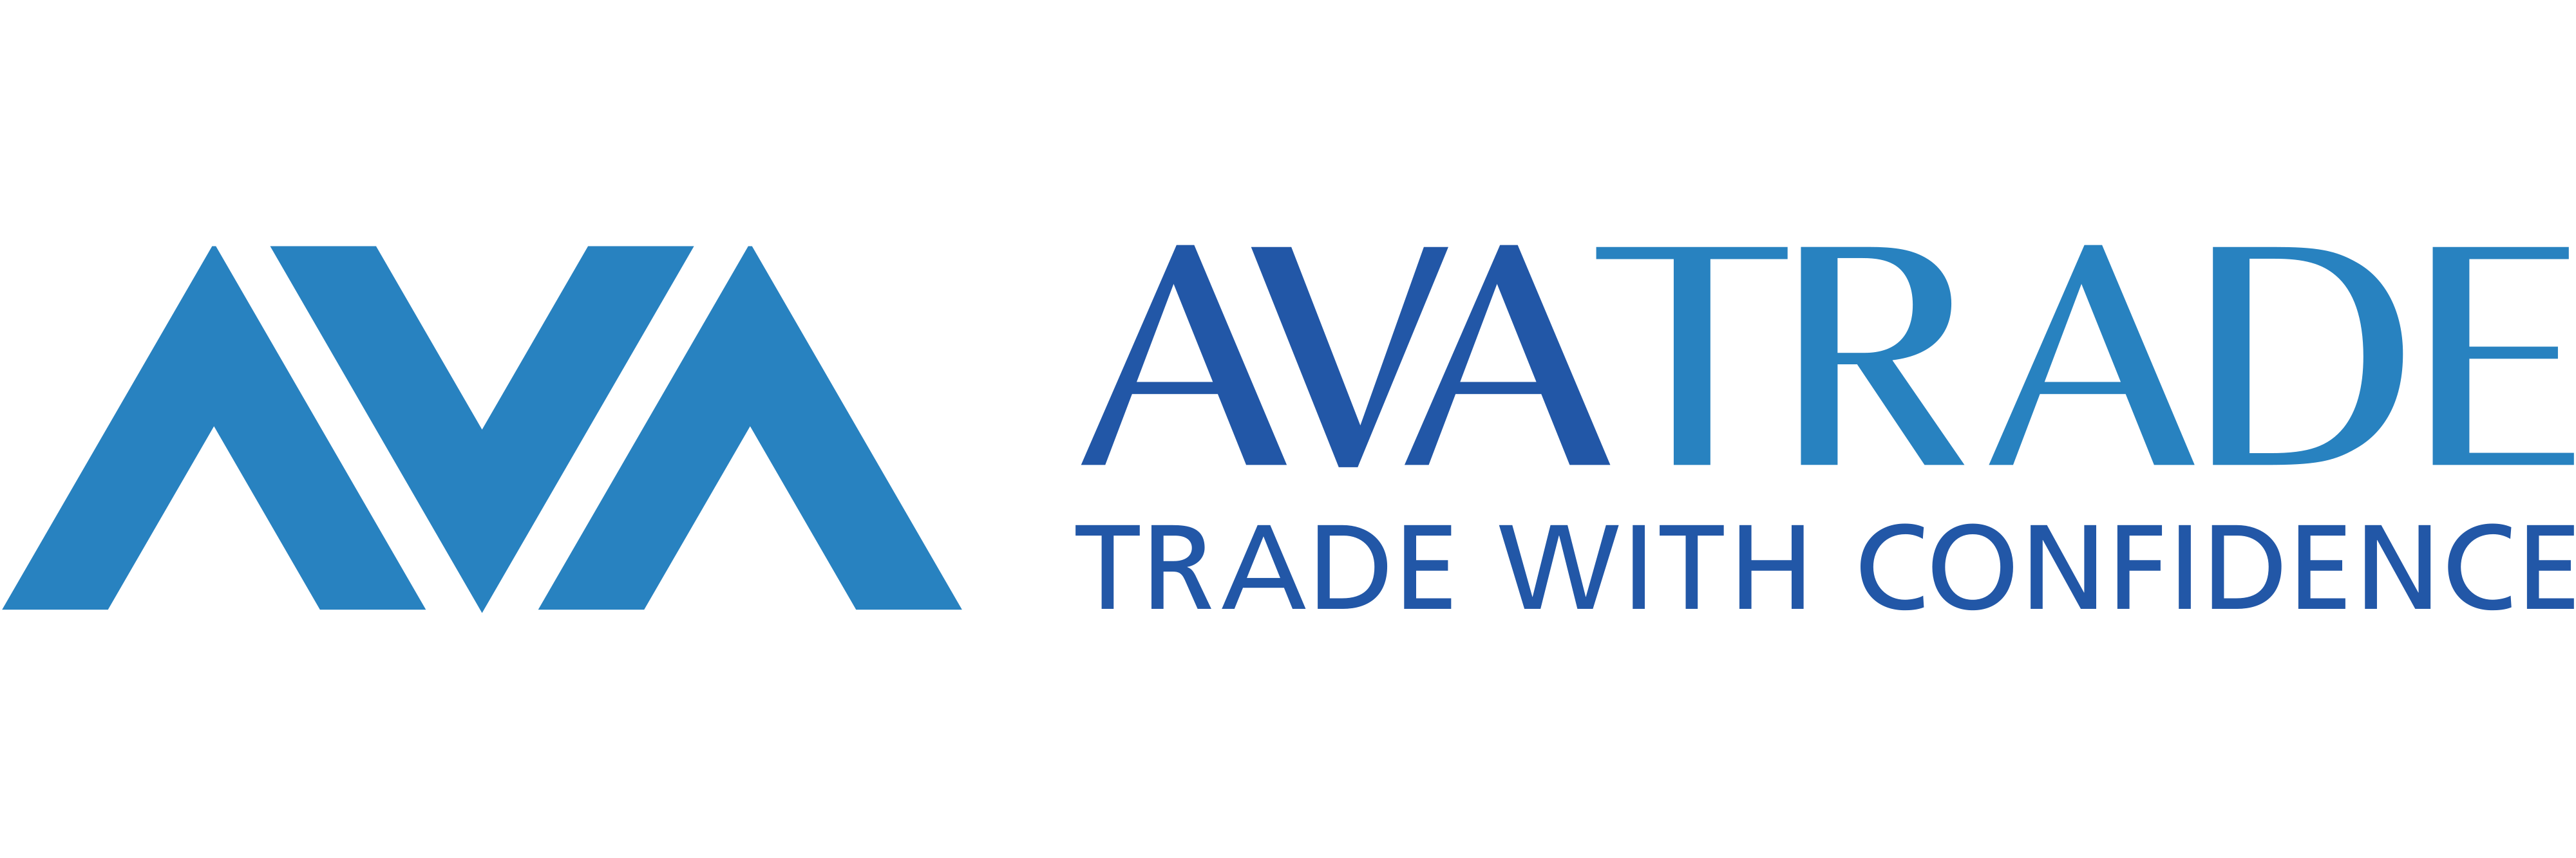 AvaTrade new logo